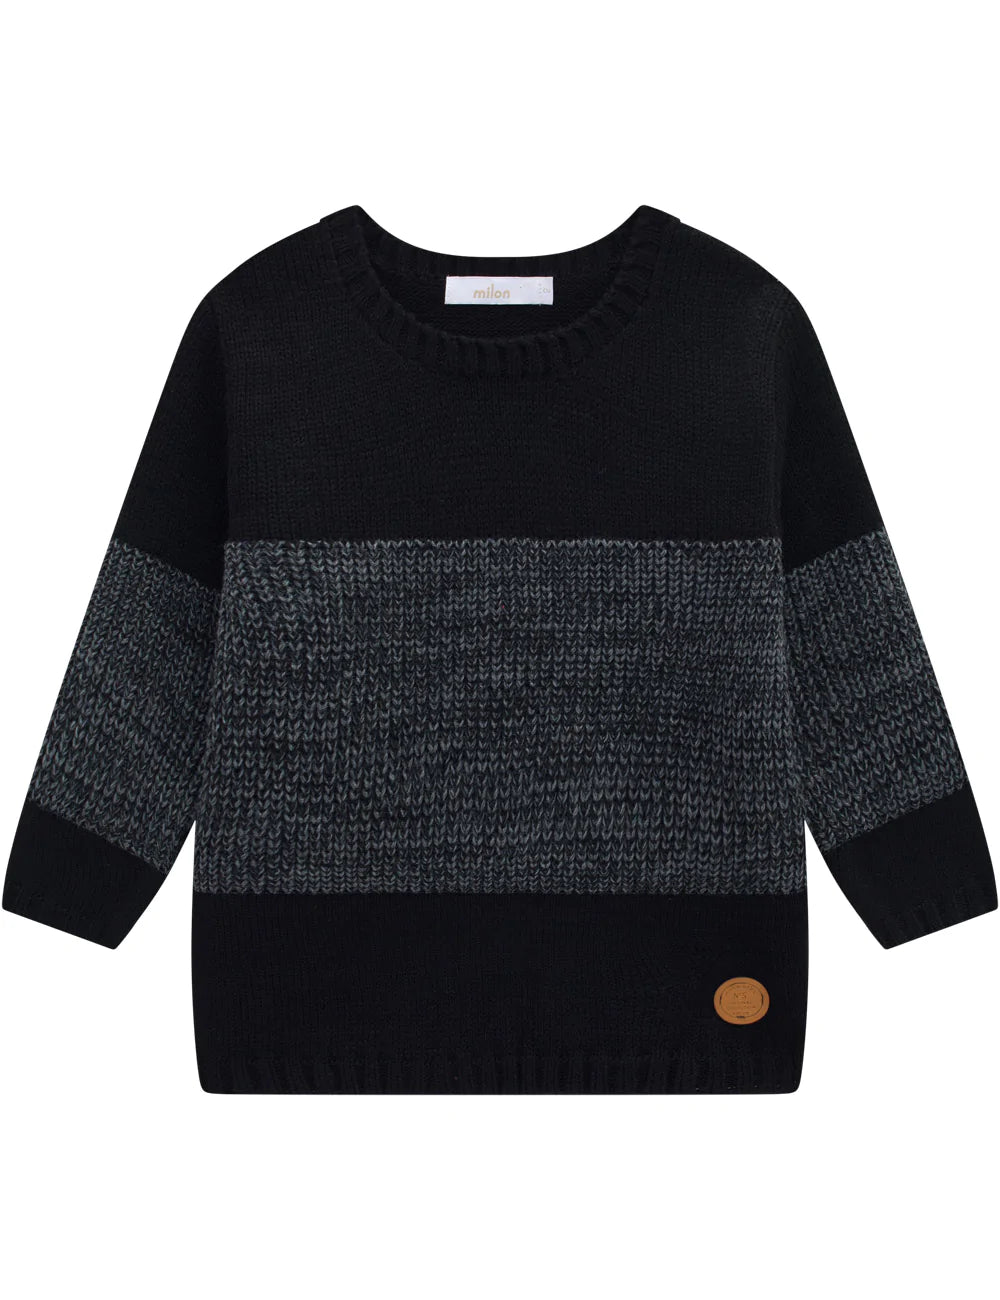 Milon Boys Sweater 13607